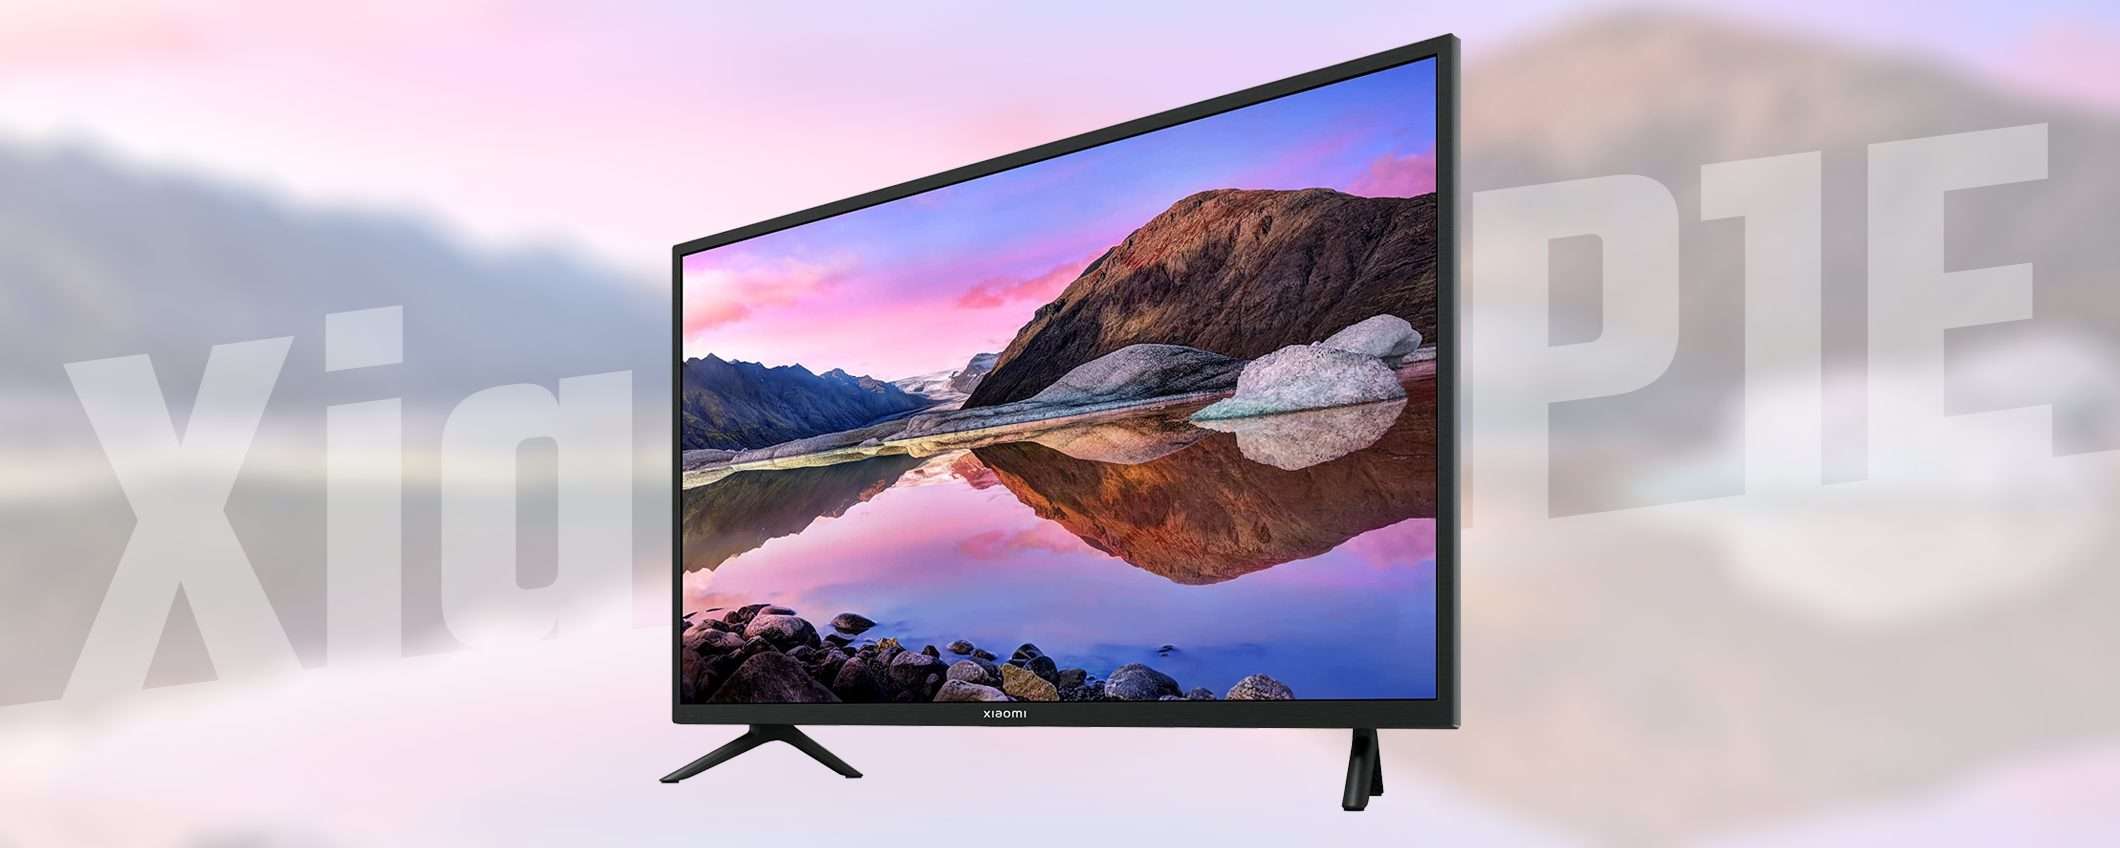 Smart TV Xiaomi a prezzo stracciato (sconto 100€)